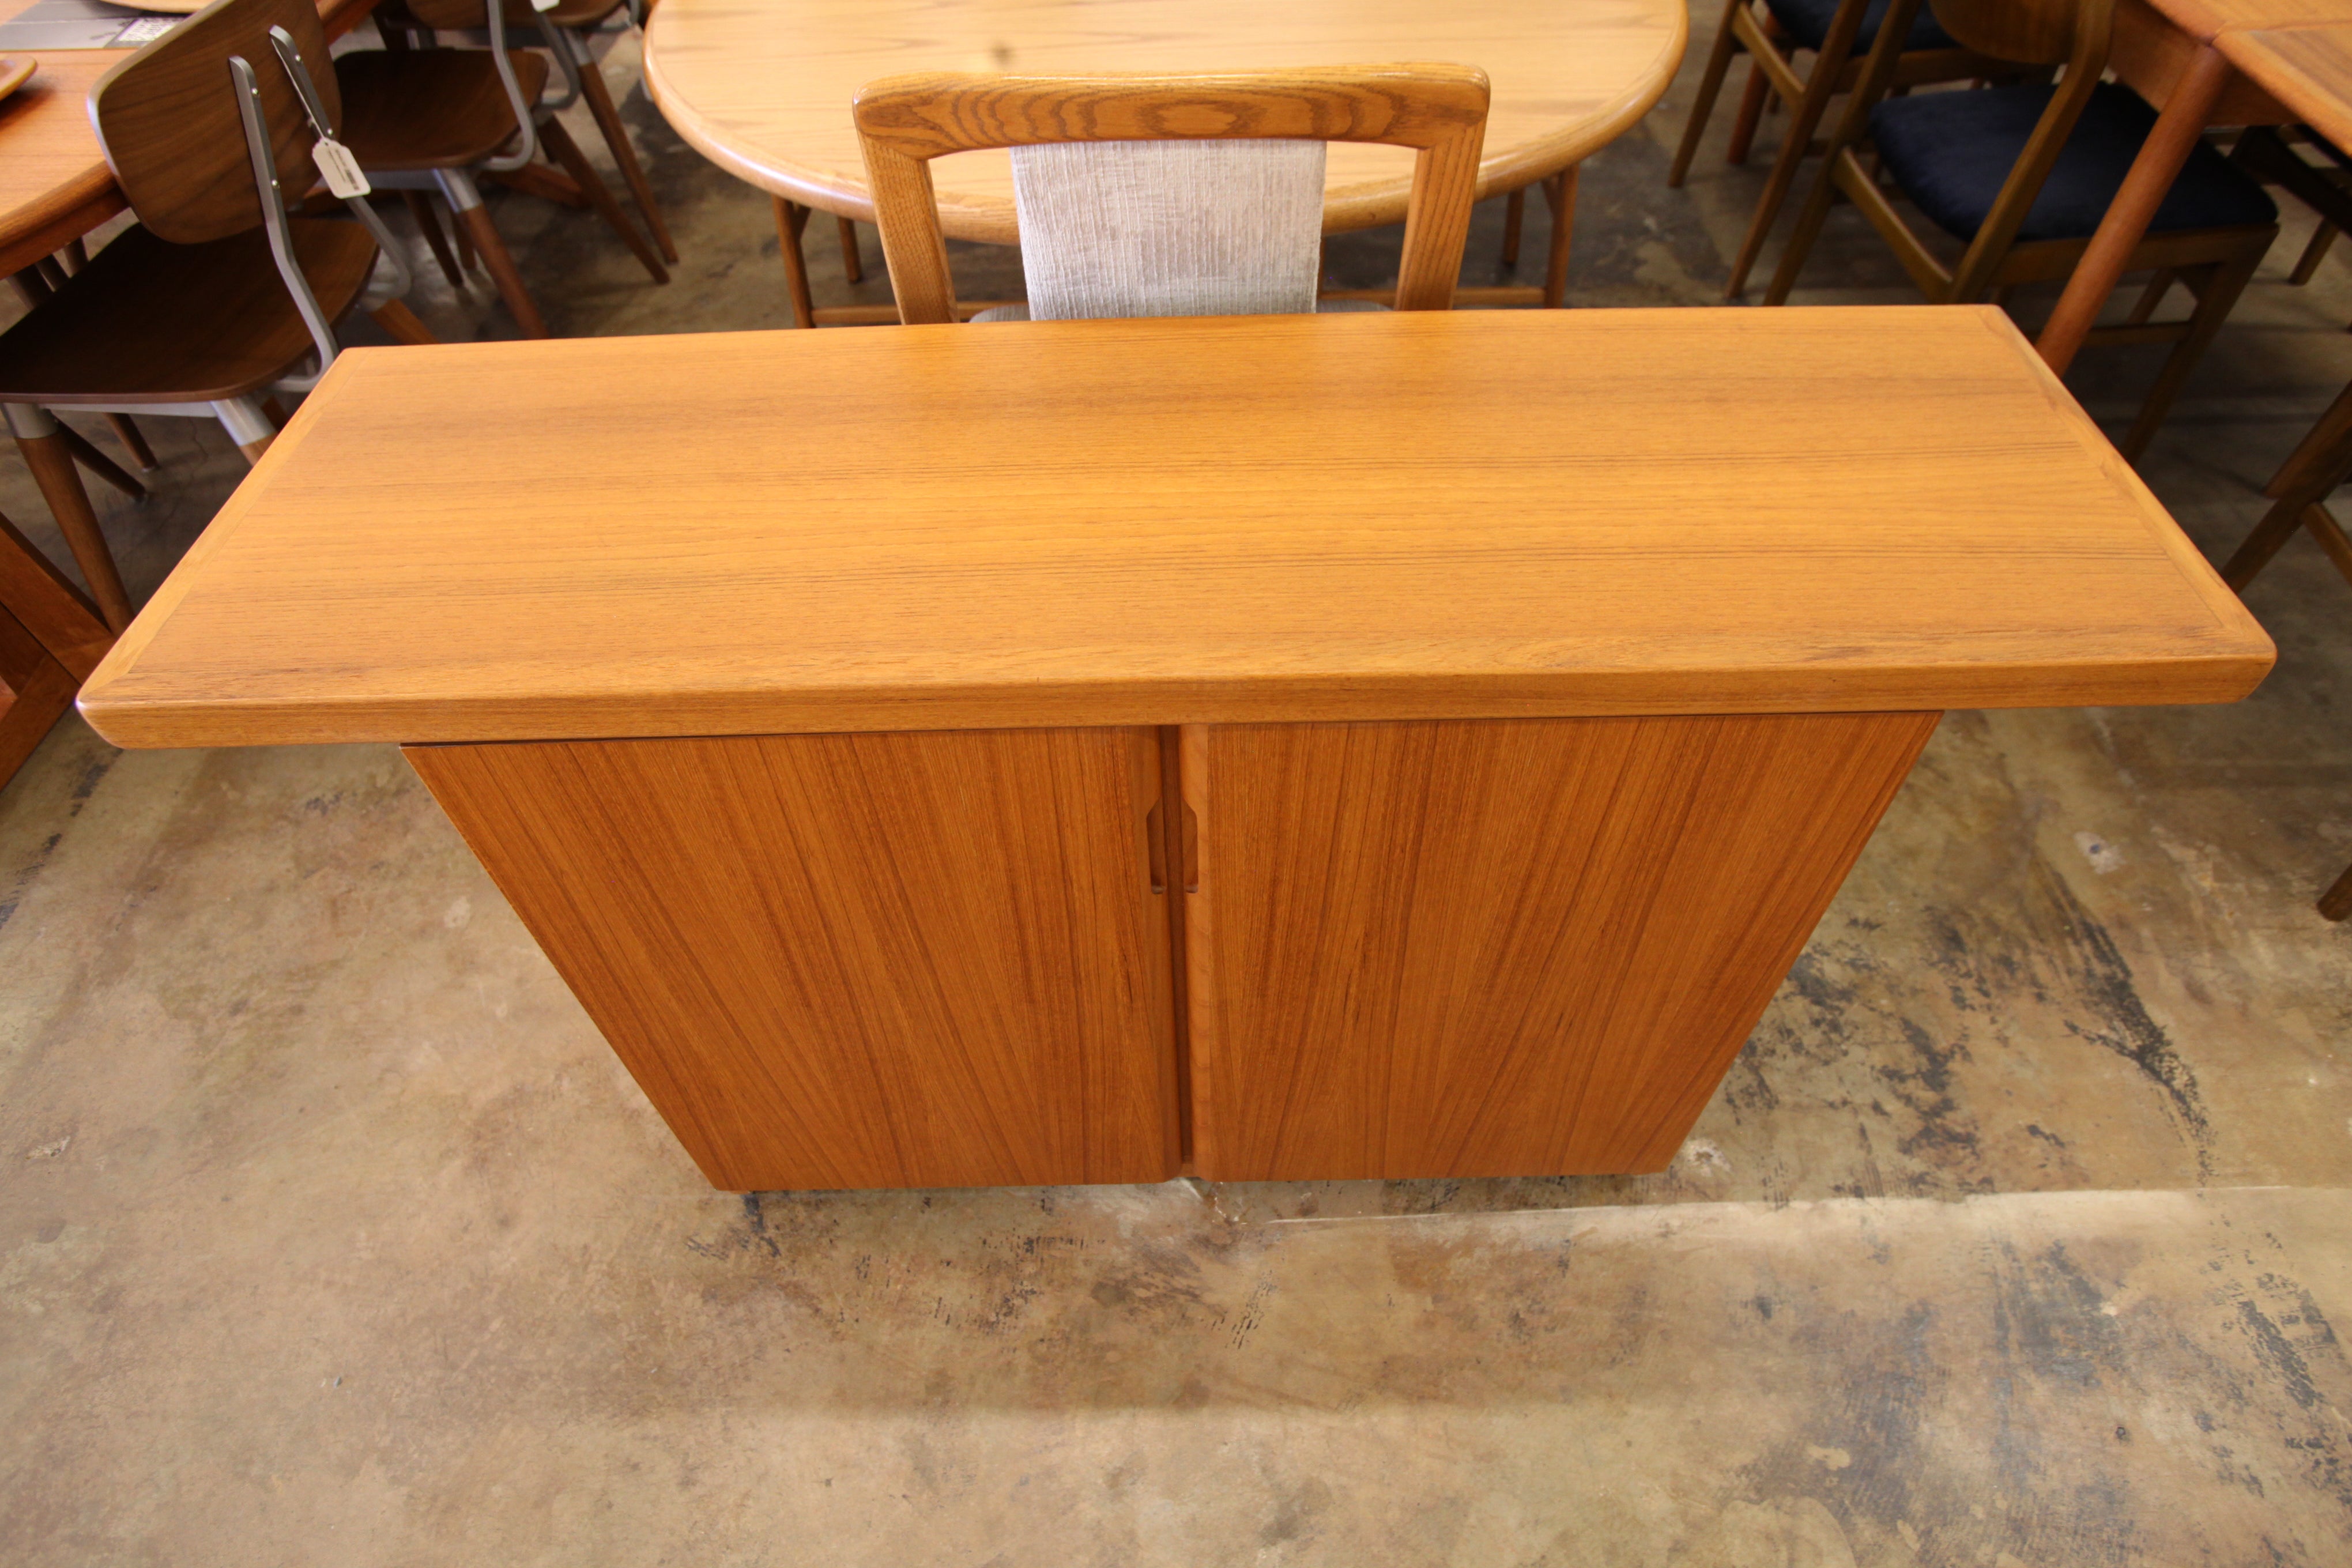 Vintage Teak Cabinet / Console Table (50"W x 15"D x 30"H)